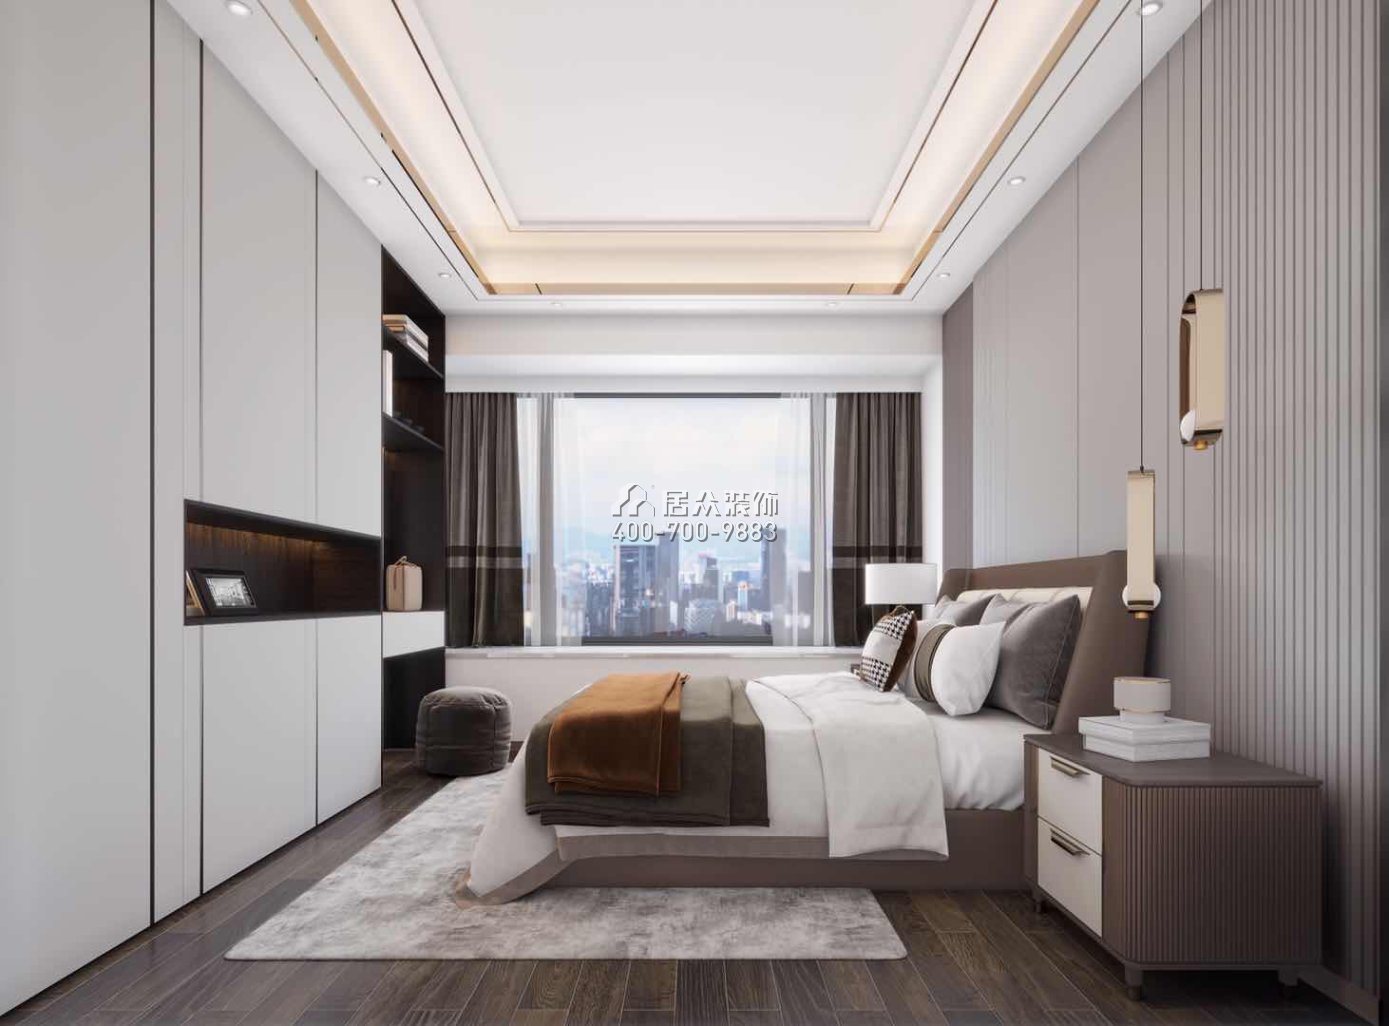 華發峰景灣134平方米現代簡約風格平層戶型臥室裝修效果圖